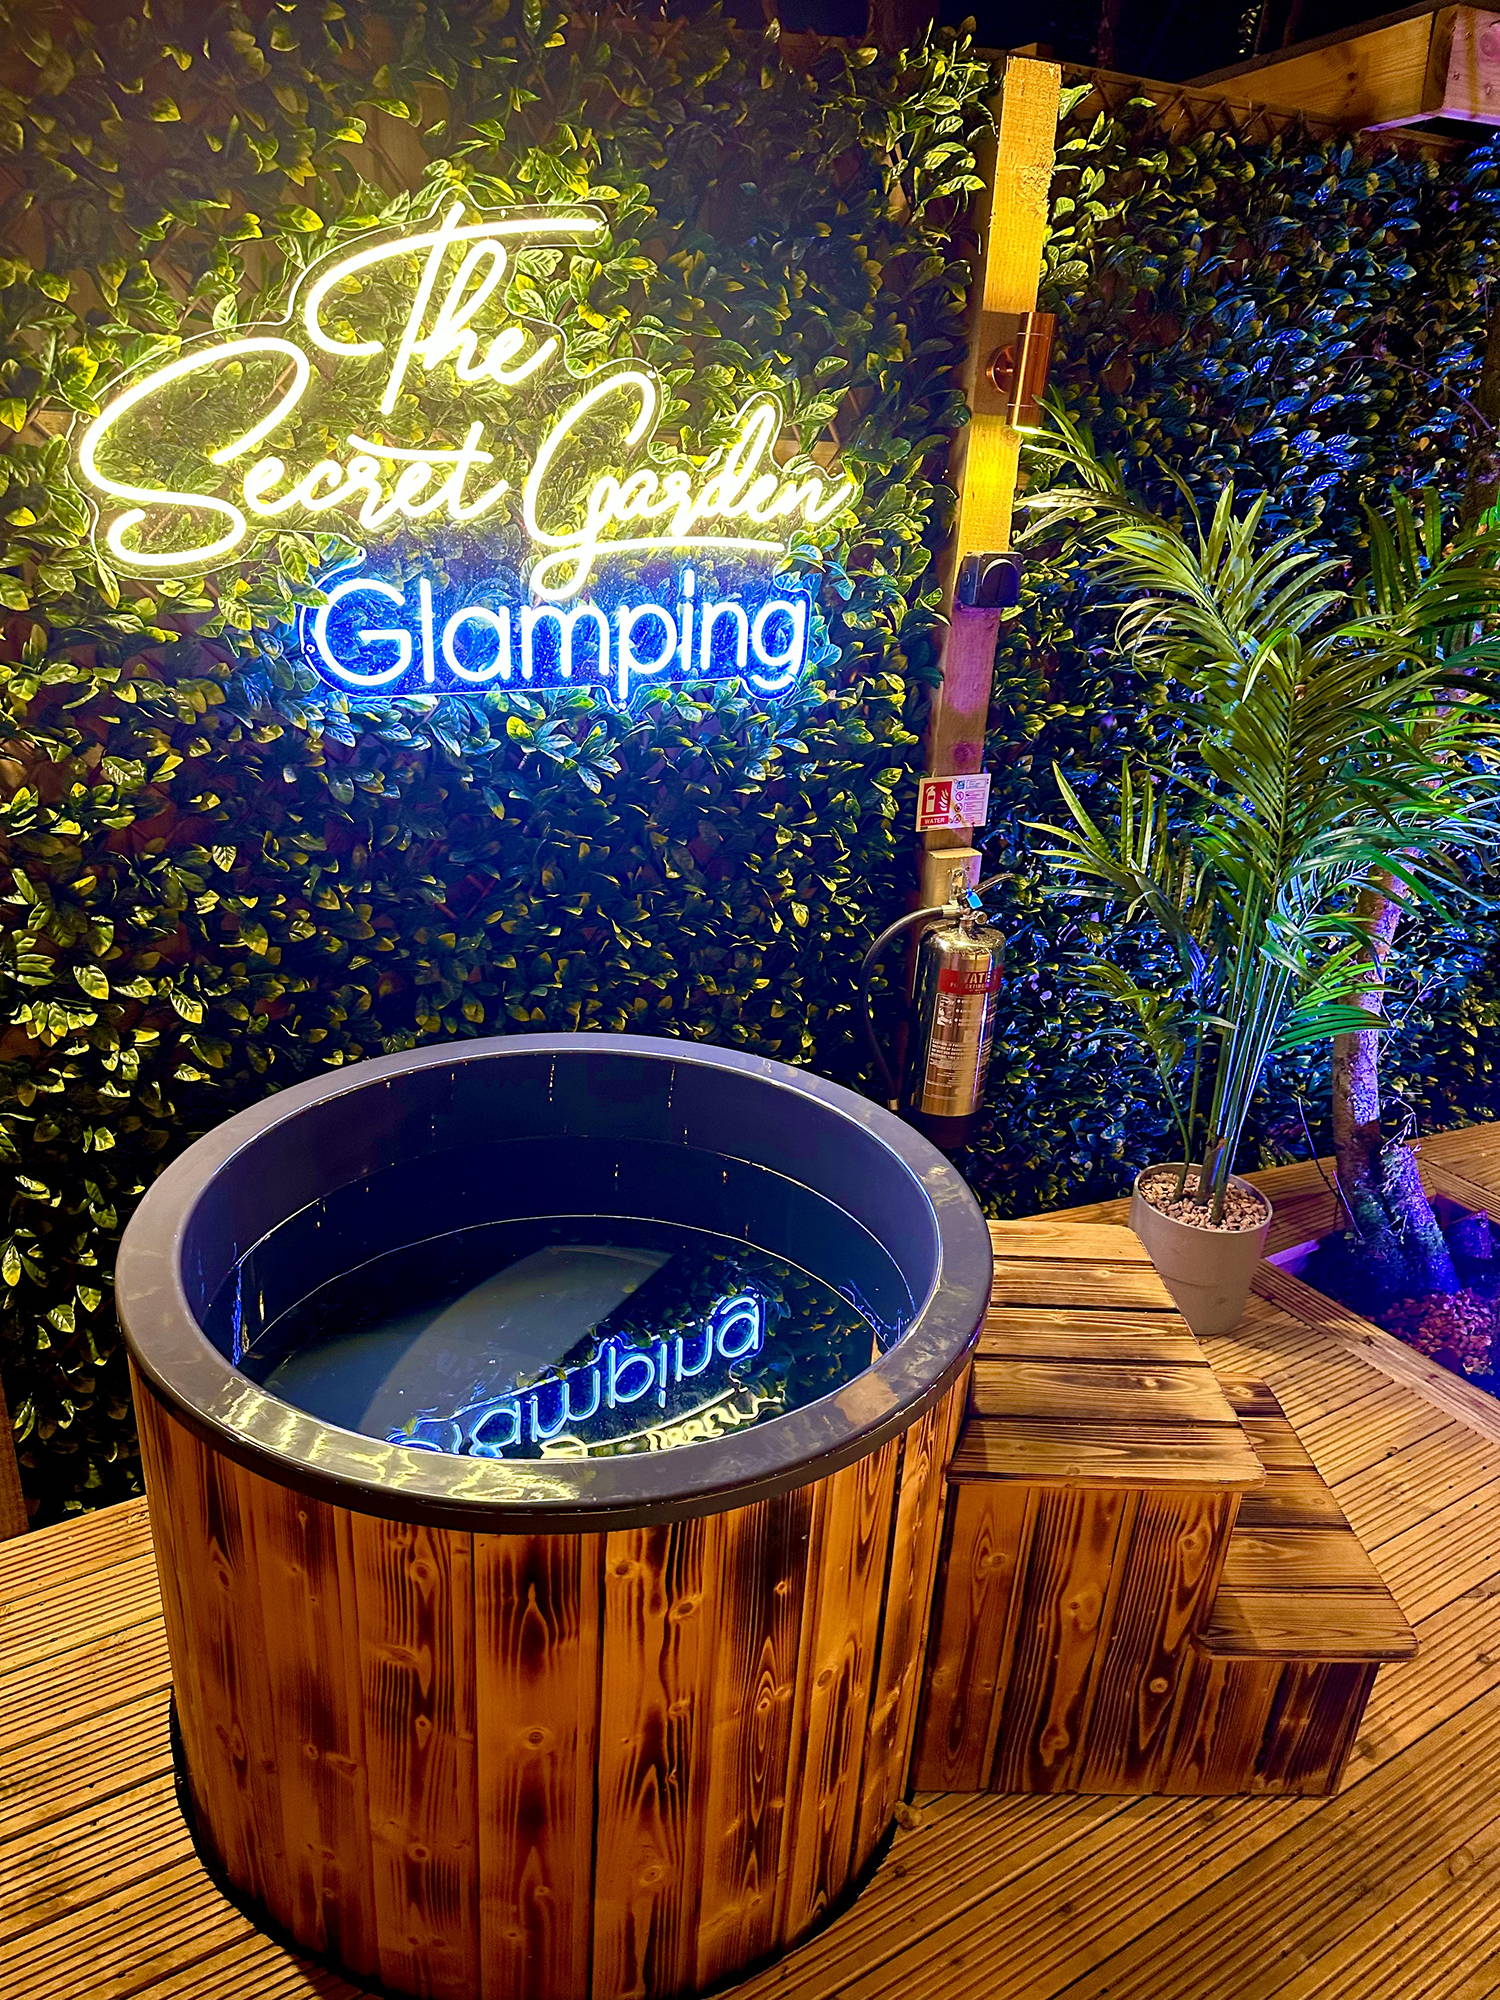 The Secret Garden Glamping hot tub